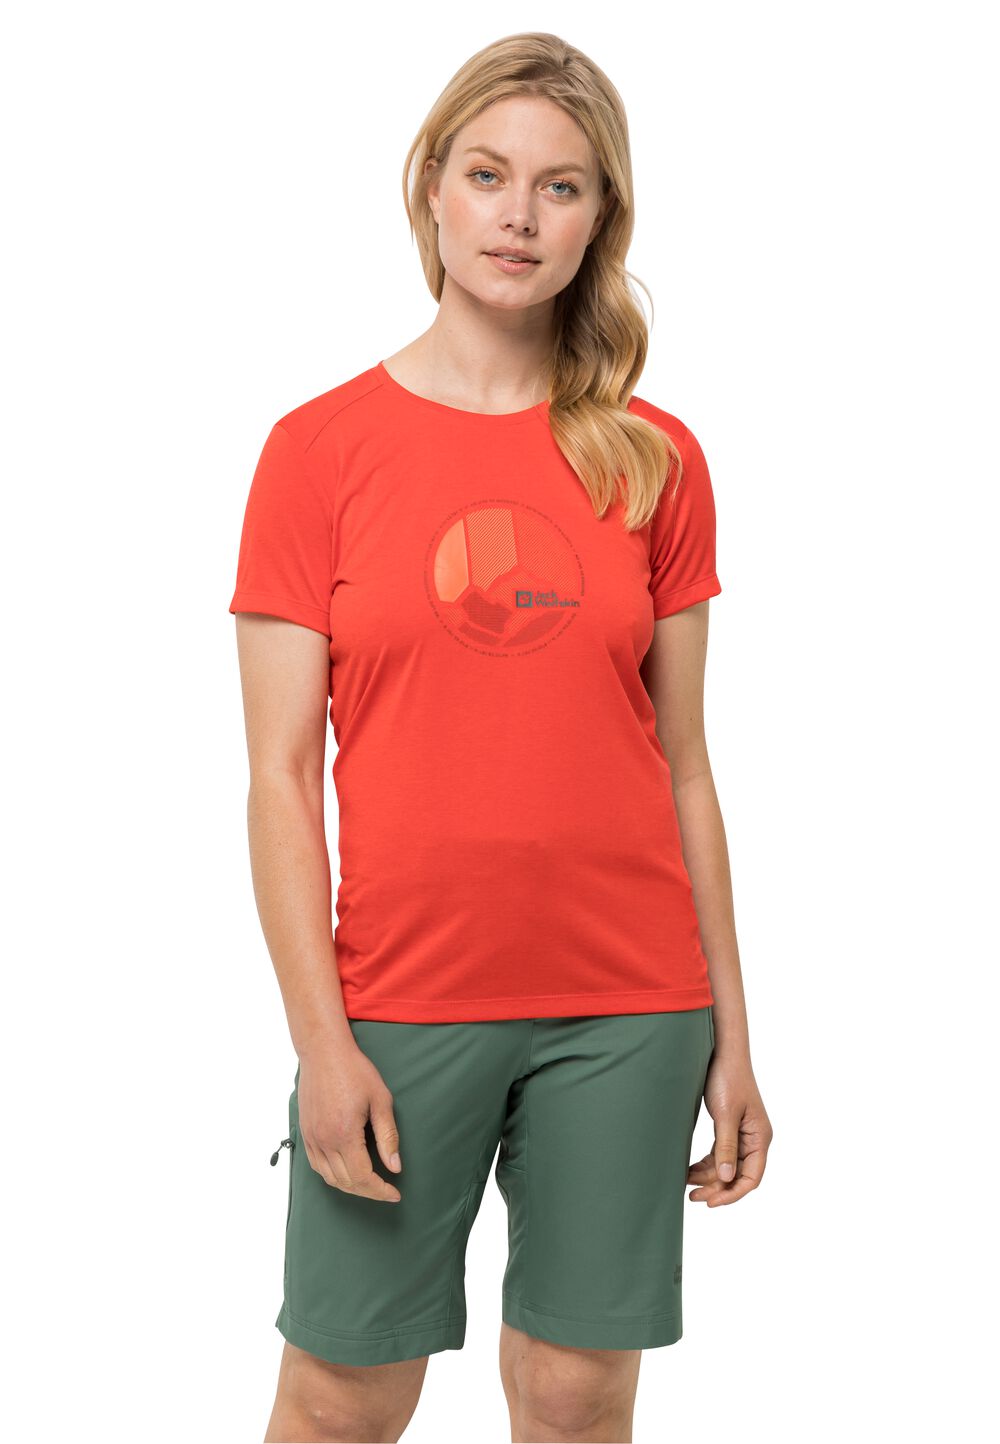 Jack Wolfskin Funktionsshirt Damen Crosstrail Graphic T-Shirt Women S tango orange tango orange von Jack Wolfskin